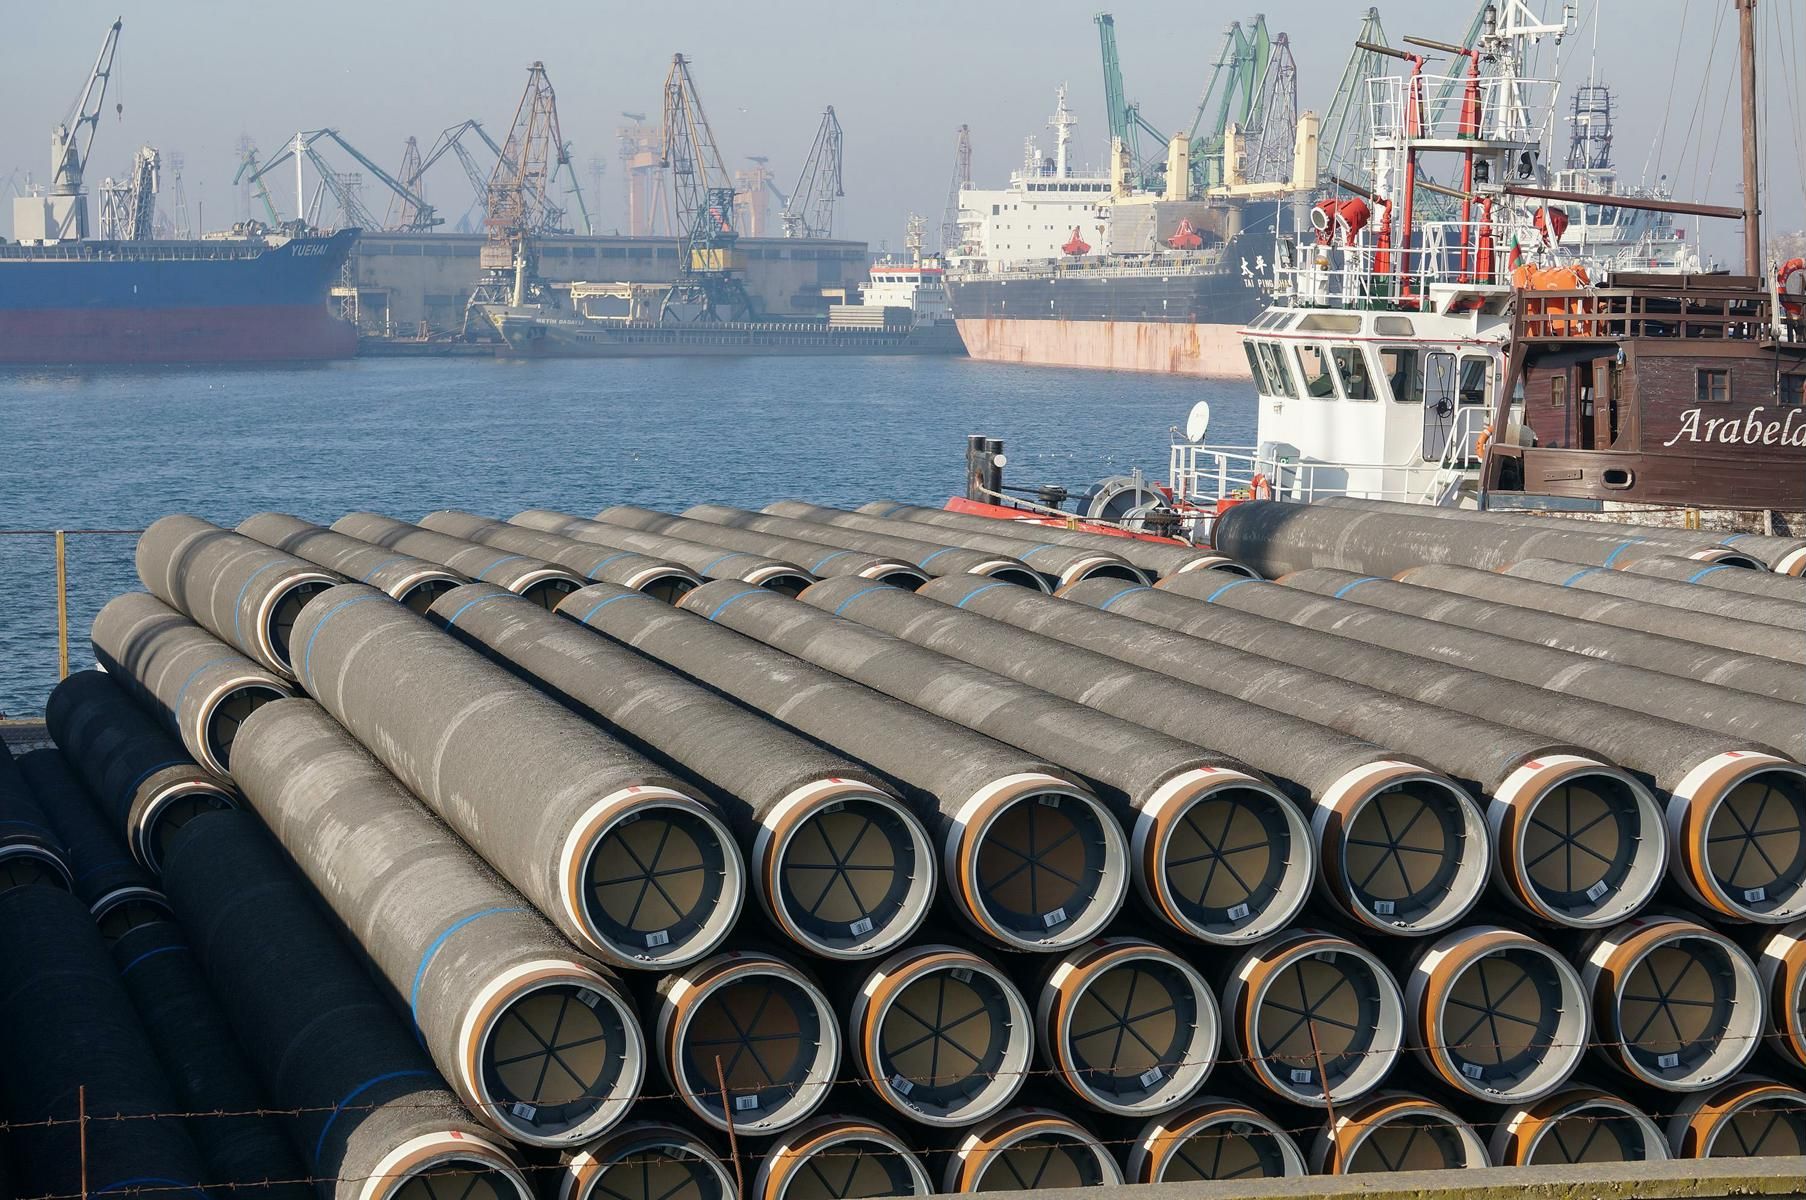 Тръби за газопровода "Южен поток" на варненското пристанище, декември 2014 г.